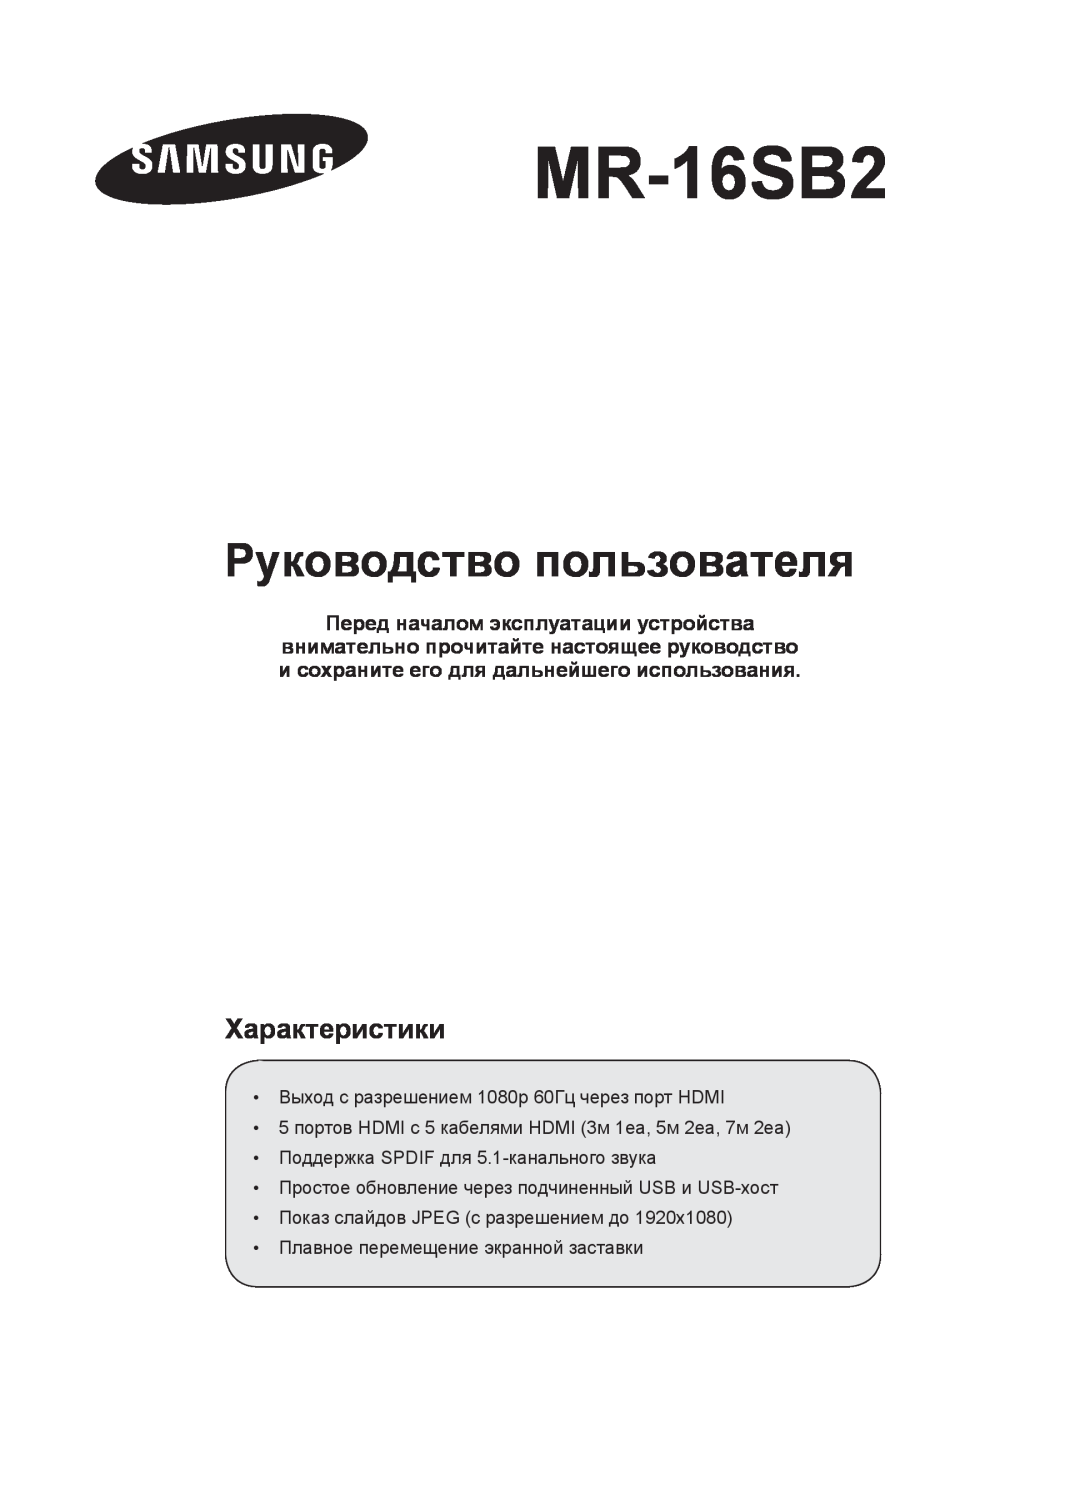 Samsung MR-16SB2 manual Руководство пользователя, Перед началом эксплуатации устройства, Характеристики 